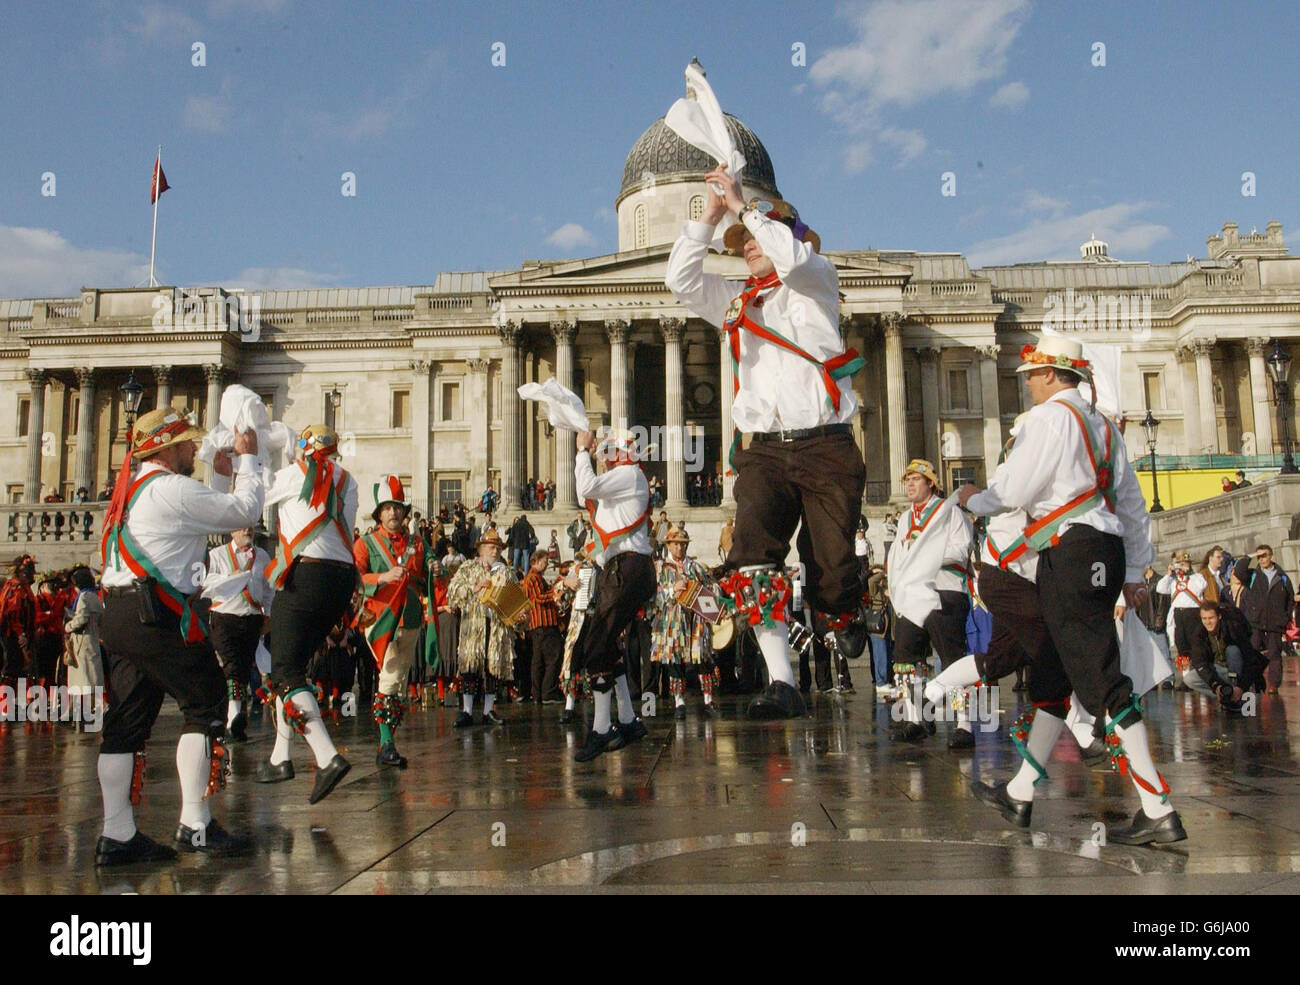 Morris-Männer tanzen auf dem Trafalgar Square in London, um Morris-Organisationen zu feiern, die eine Ausnahme vom Lizenzierungsgesetz von 2003 erhalten, wonach der öffentliche Tanz durch Lizenz eingeschränkt werden muss. Stockfoto